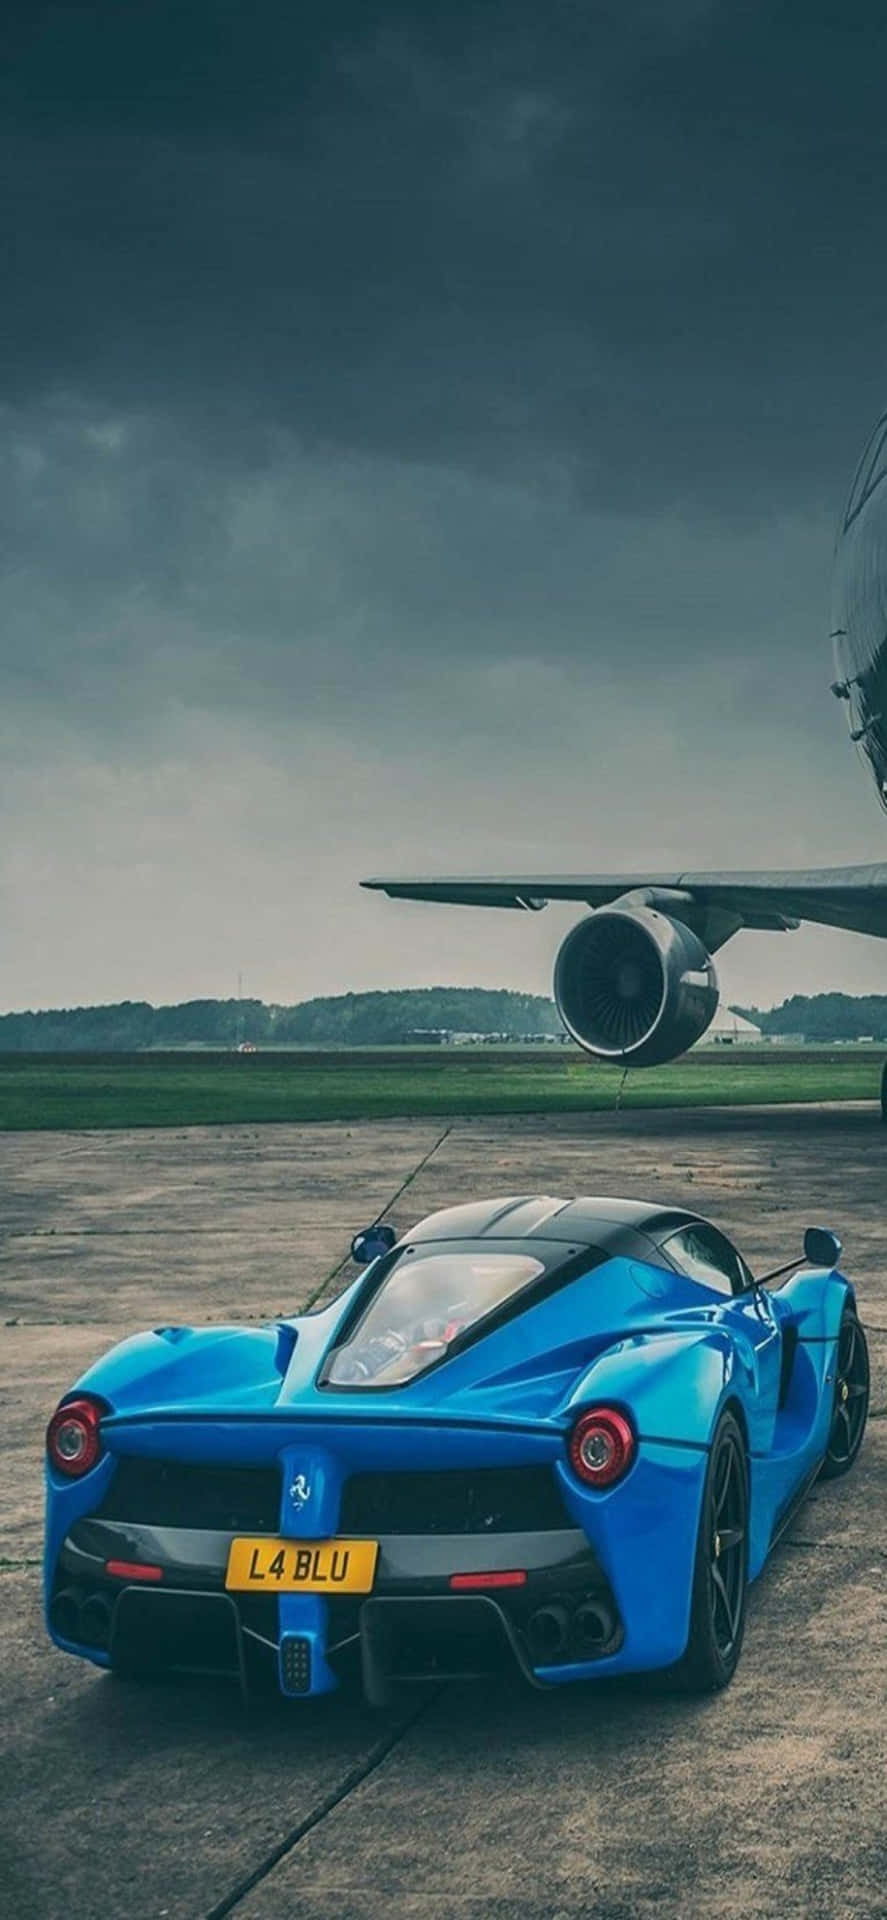 Papelde Parede Do Iphone Xs Max Da Ferrari, Azul Brilhante, Com O Carro Laferrari Em Um Campo De Aviação.